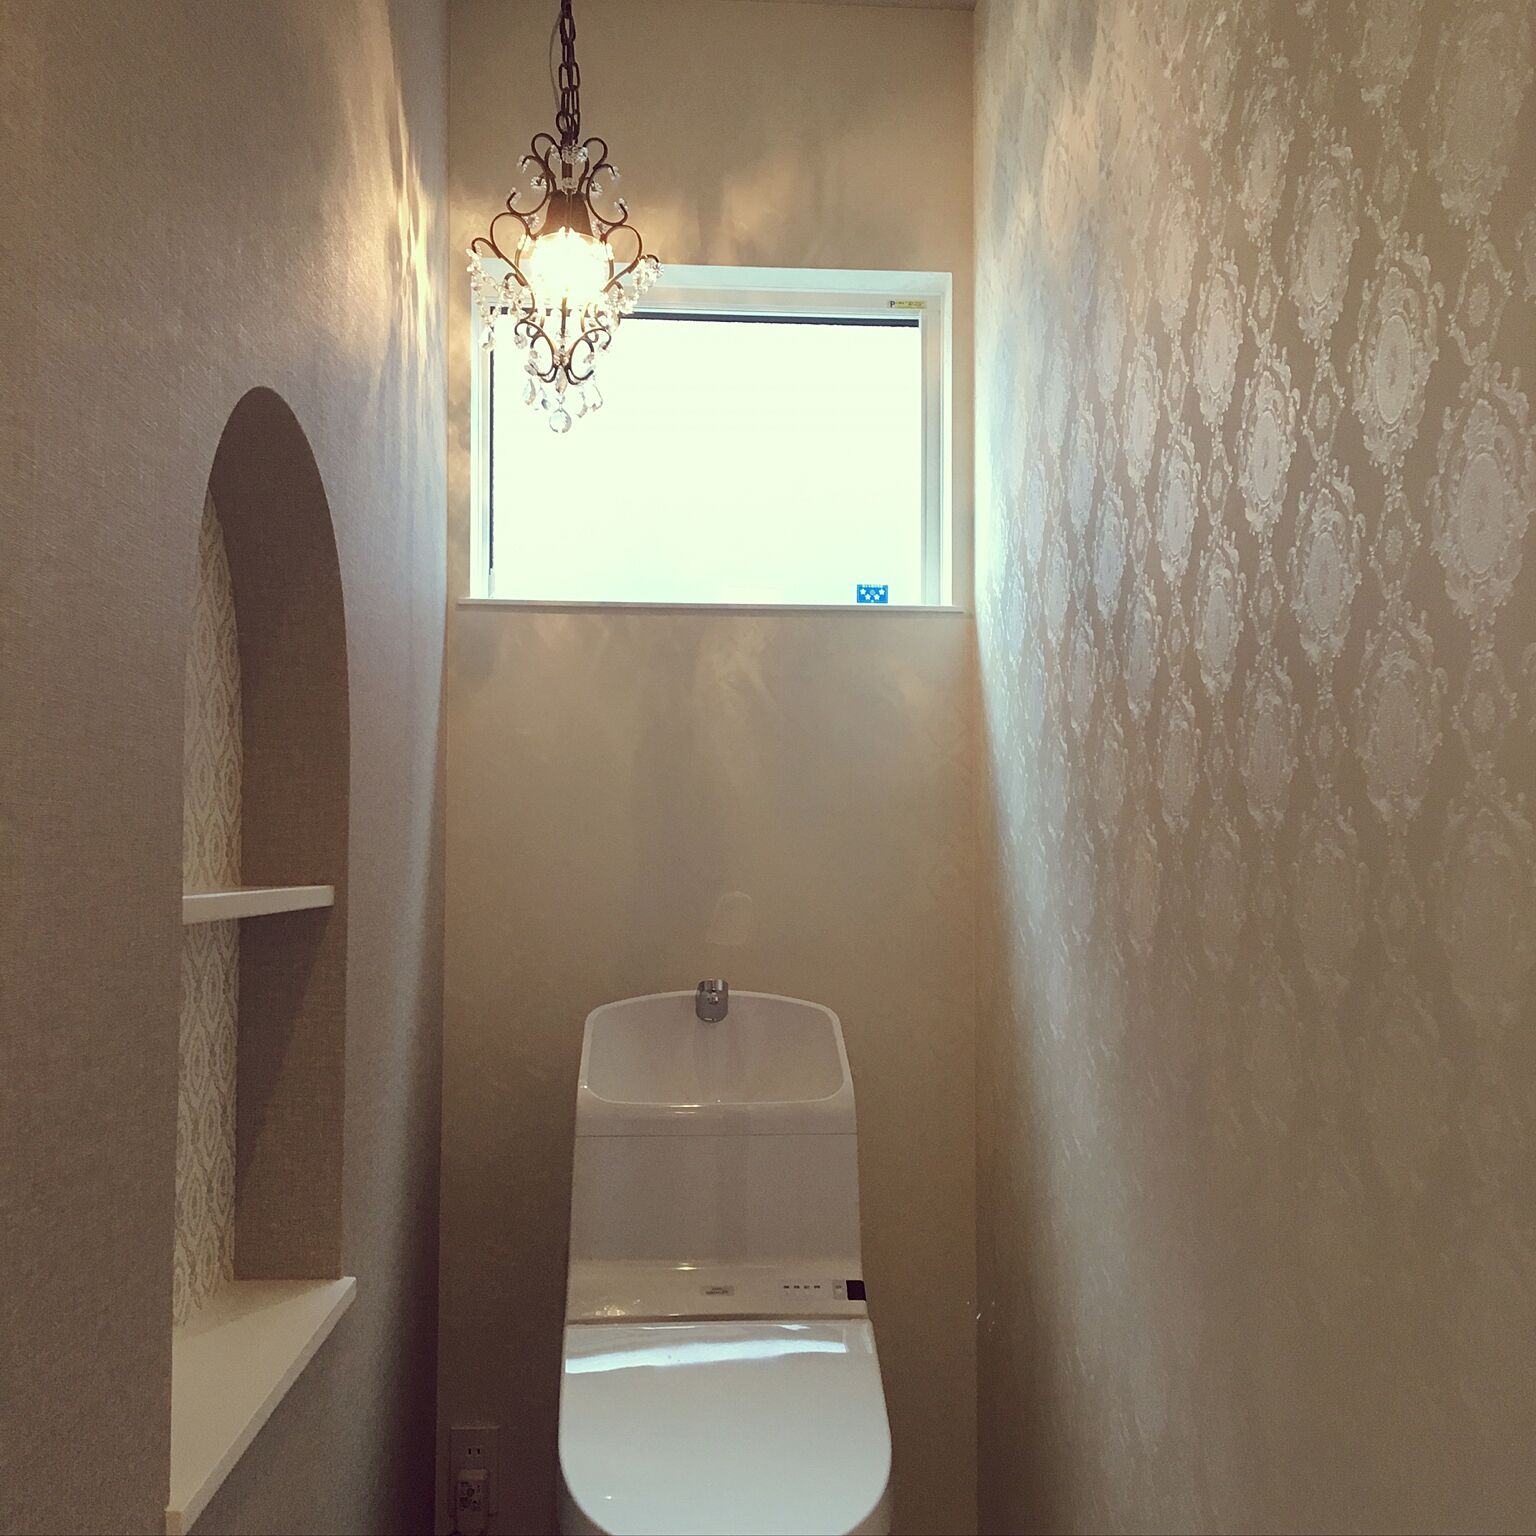 ブロンズ色の輝きが、ダマスク柄の壁紙をより一層と引き立てていますね☆お洒落なトイレです！